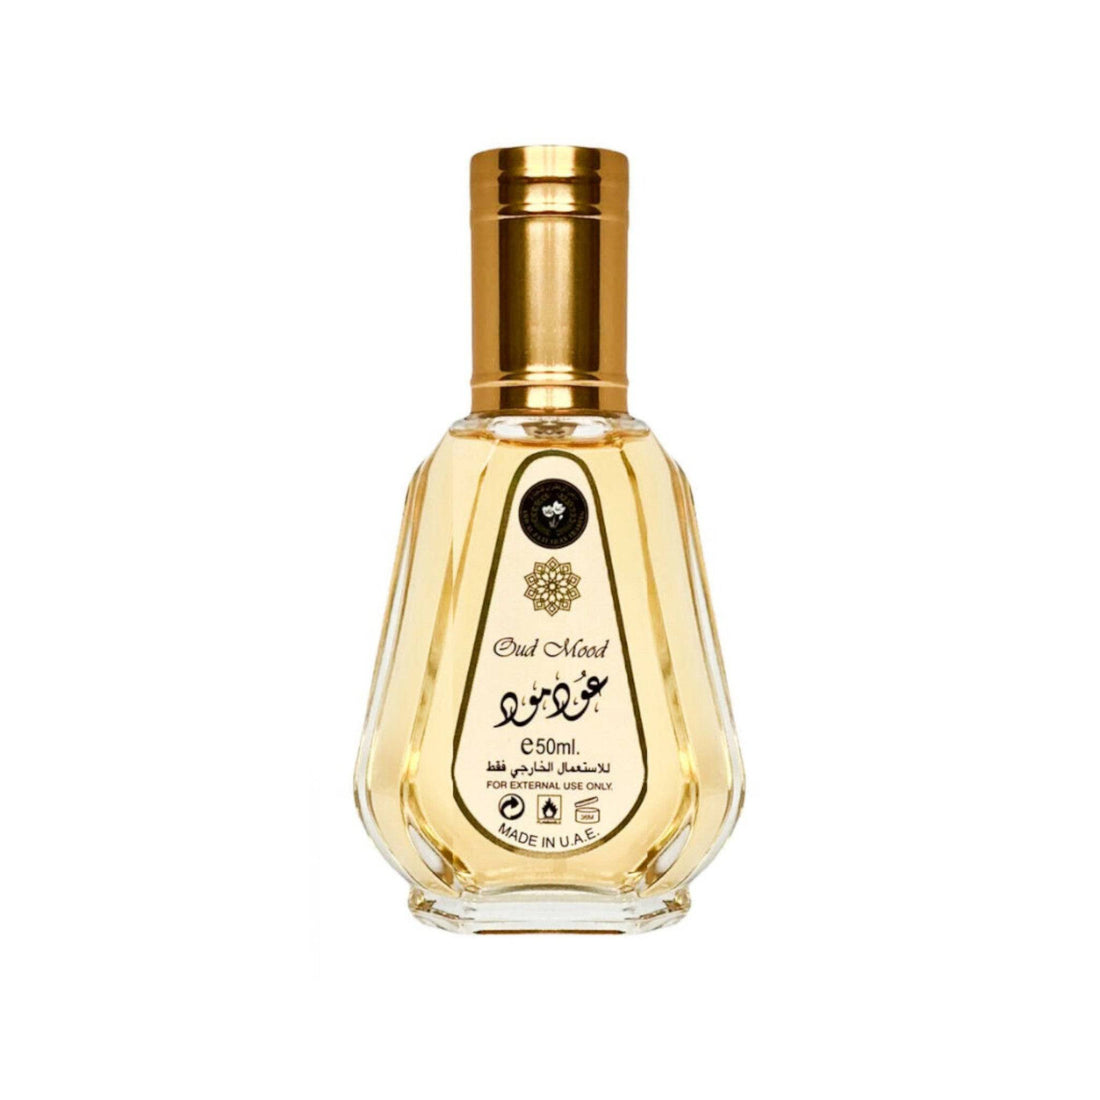 Oud Mood 50ml Eau de Parfum by Ard Al Zaafaran in a sleek bottle, showcasing its luxurious oriental woody fragrance.